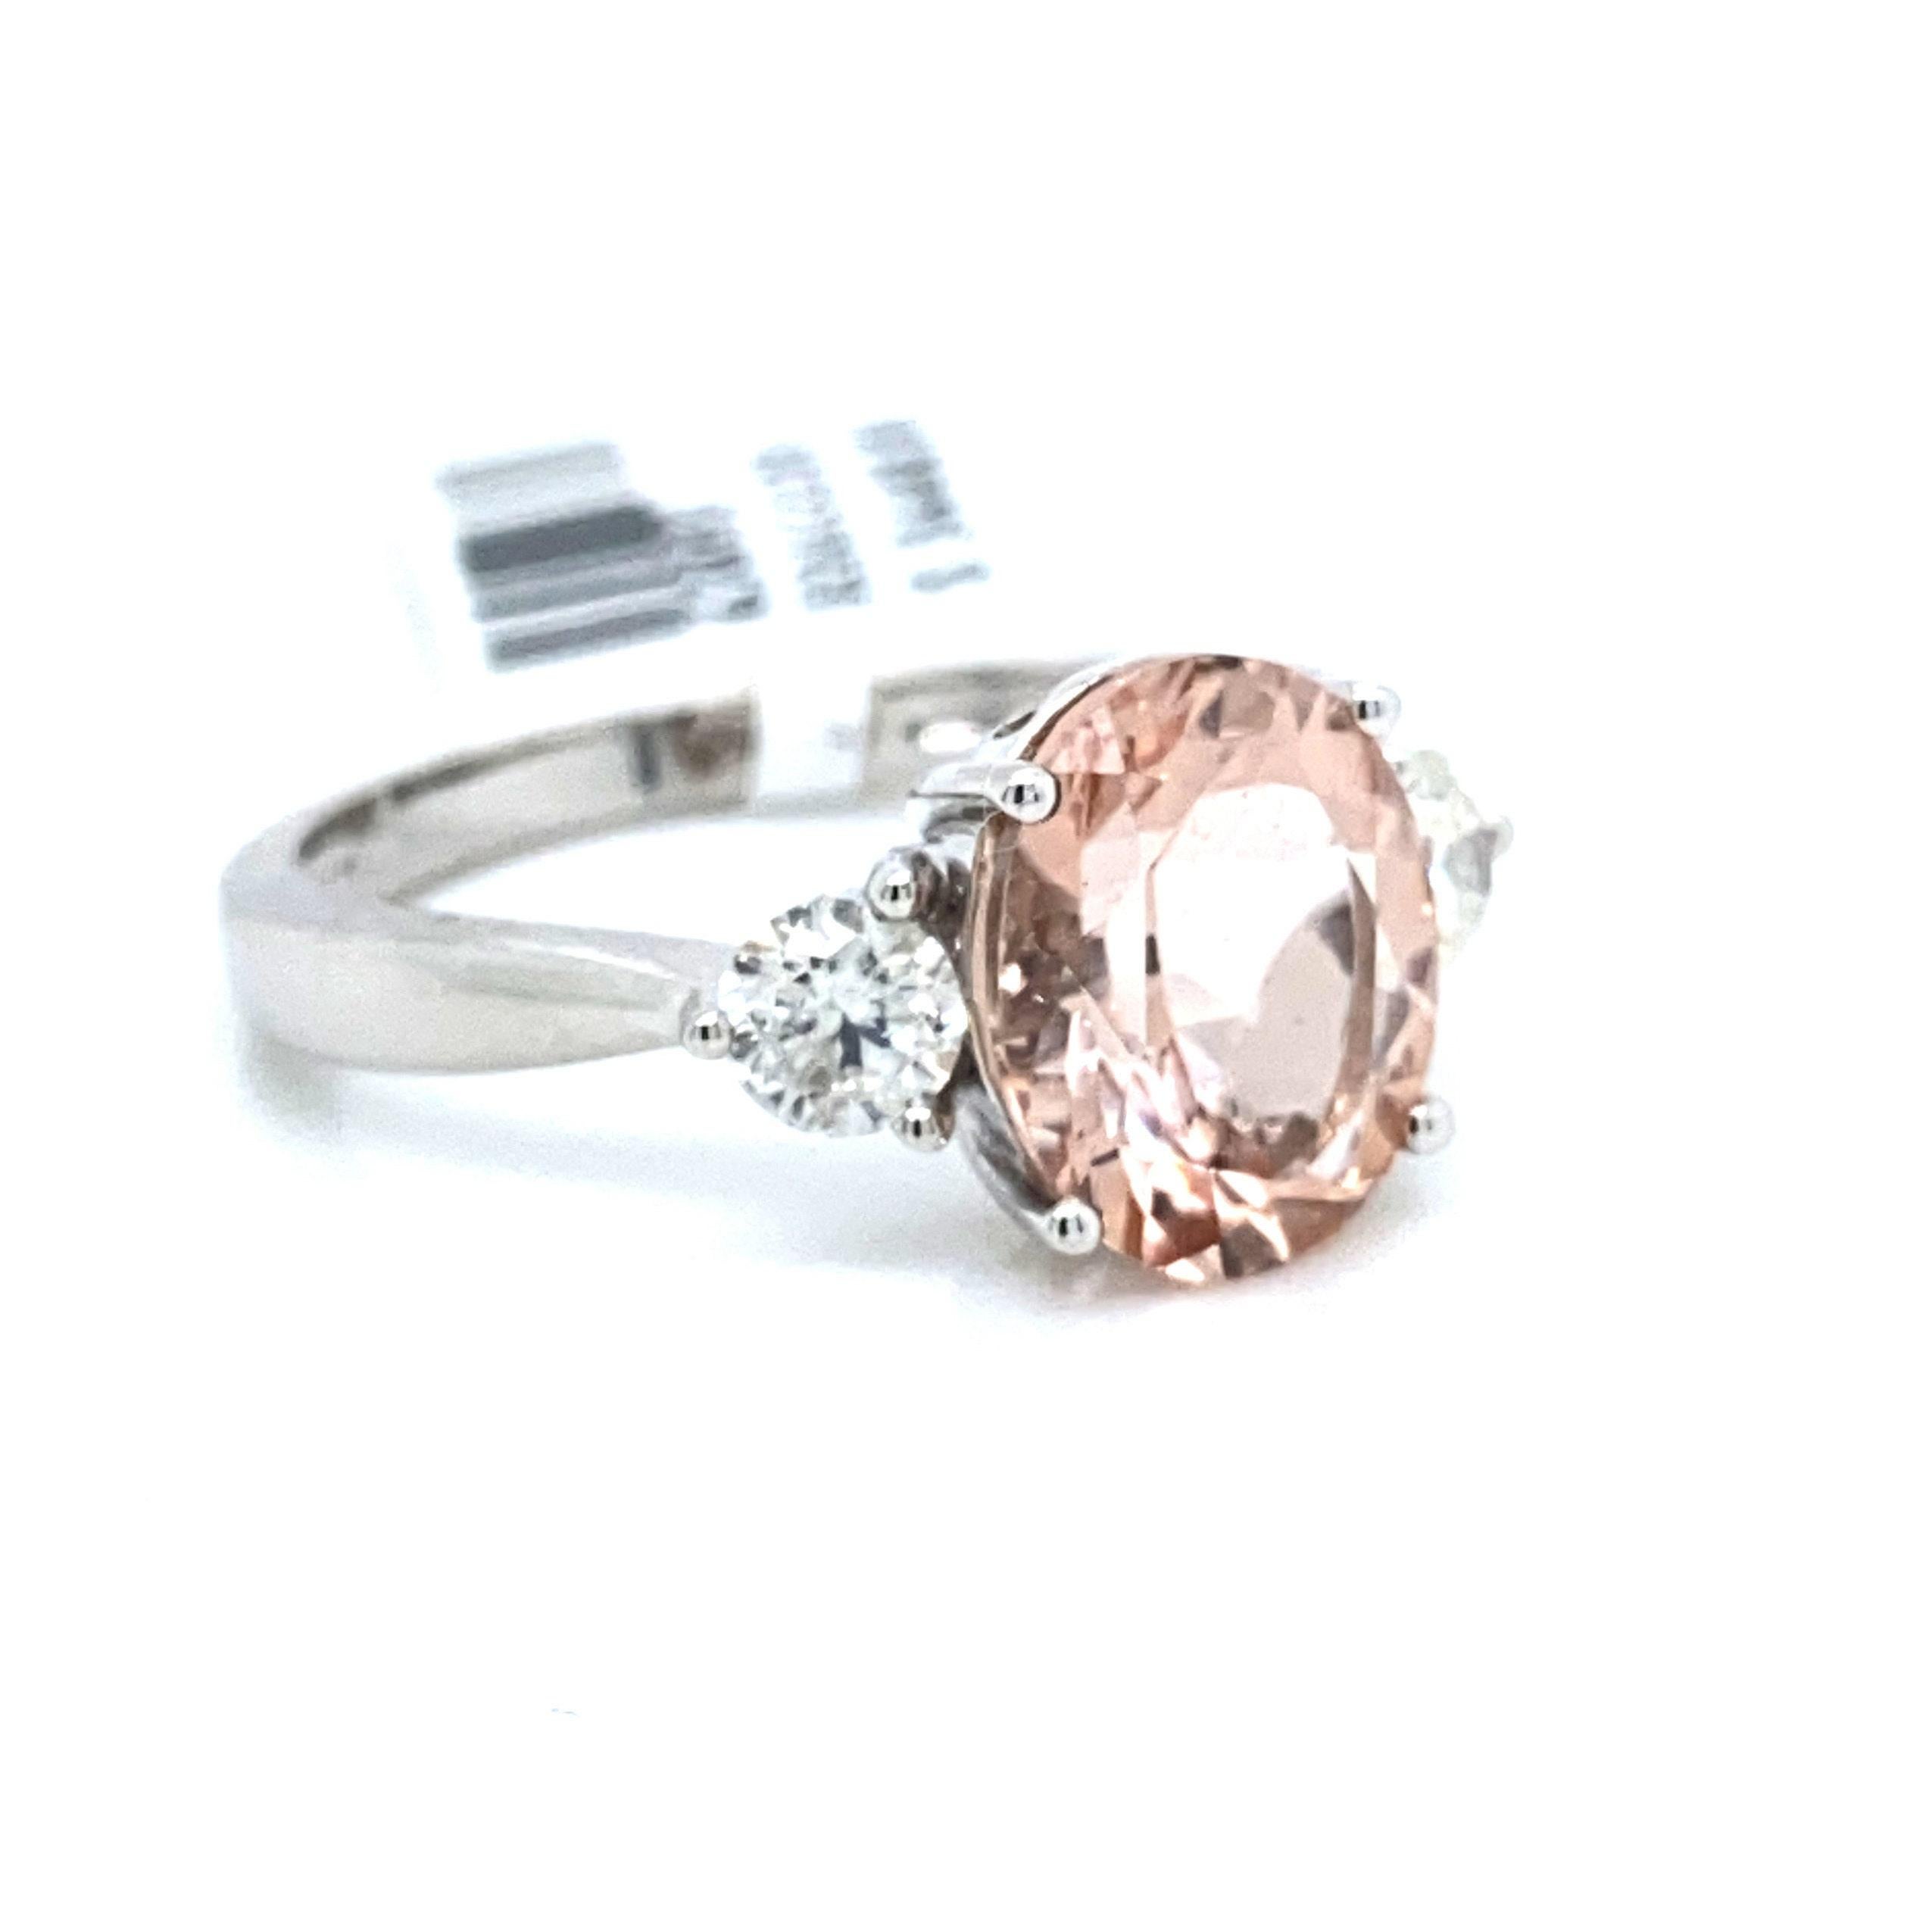 Il s'agit d'une majestueuse bague à trois pierres, morganite et diamant, sertie dans de l'or blanc massif 14K. L'ovale de Morganite naturel de 3,36 Ct a une excellente couleur rose pêche et est complété par un diamant vif de chaque côté. La bague